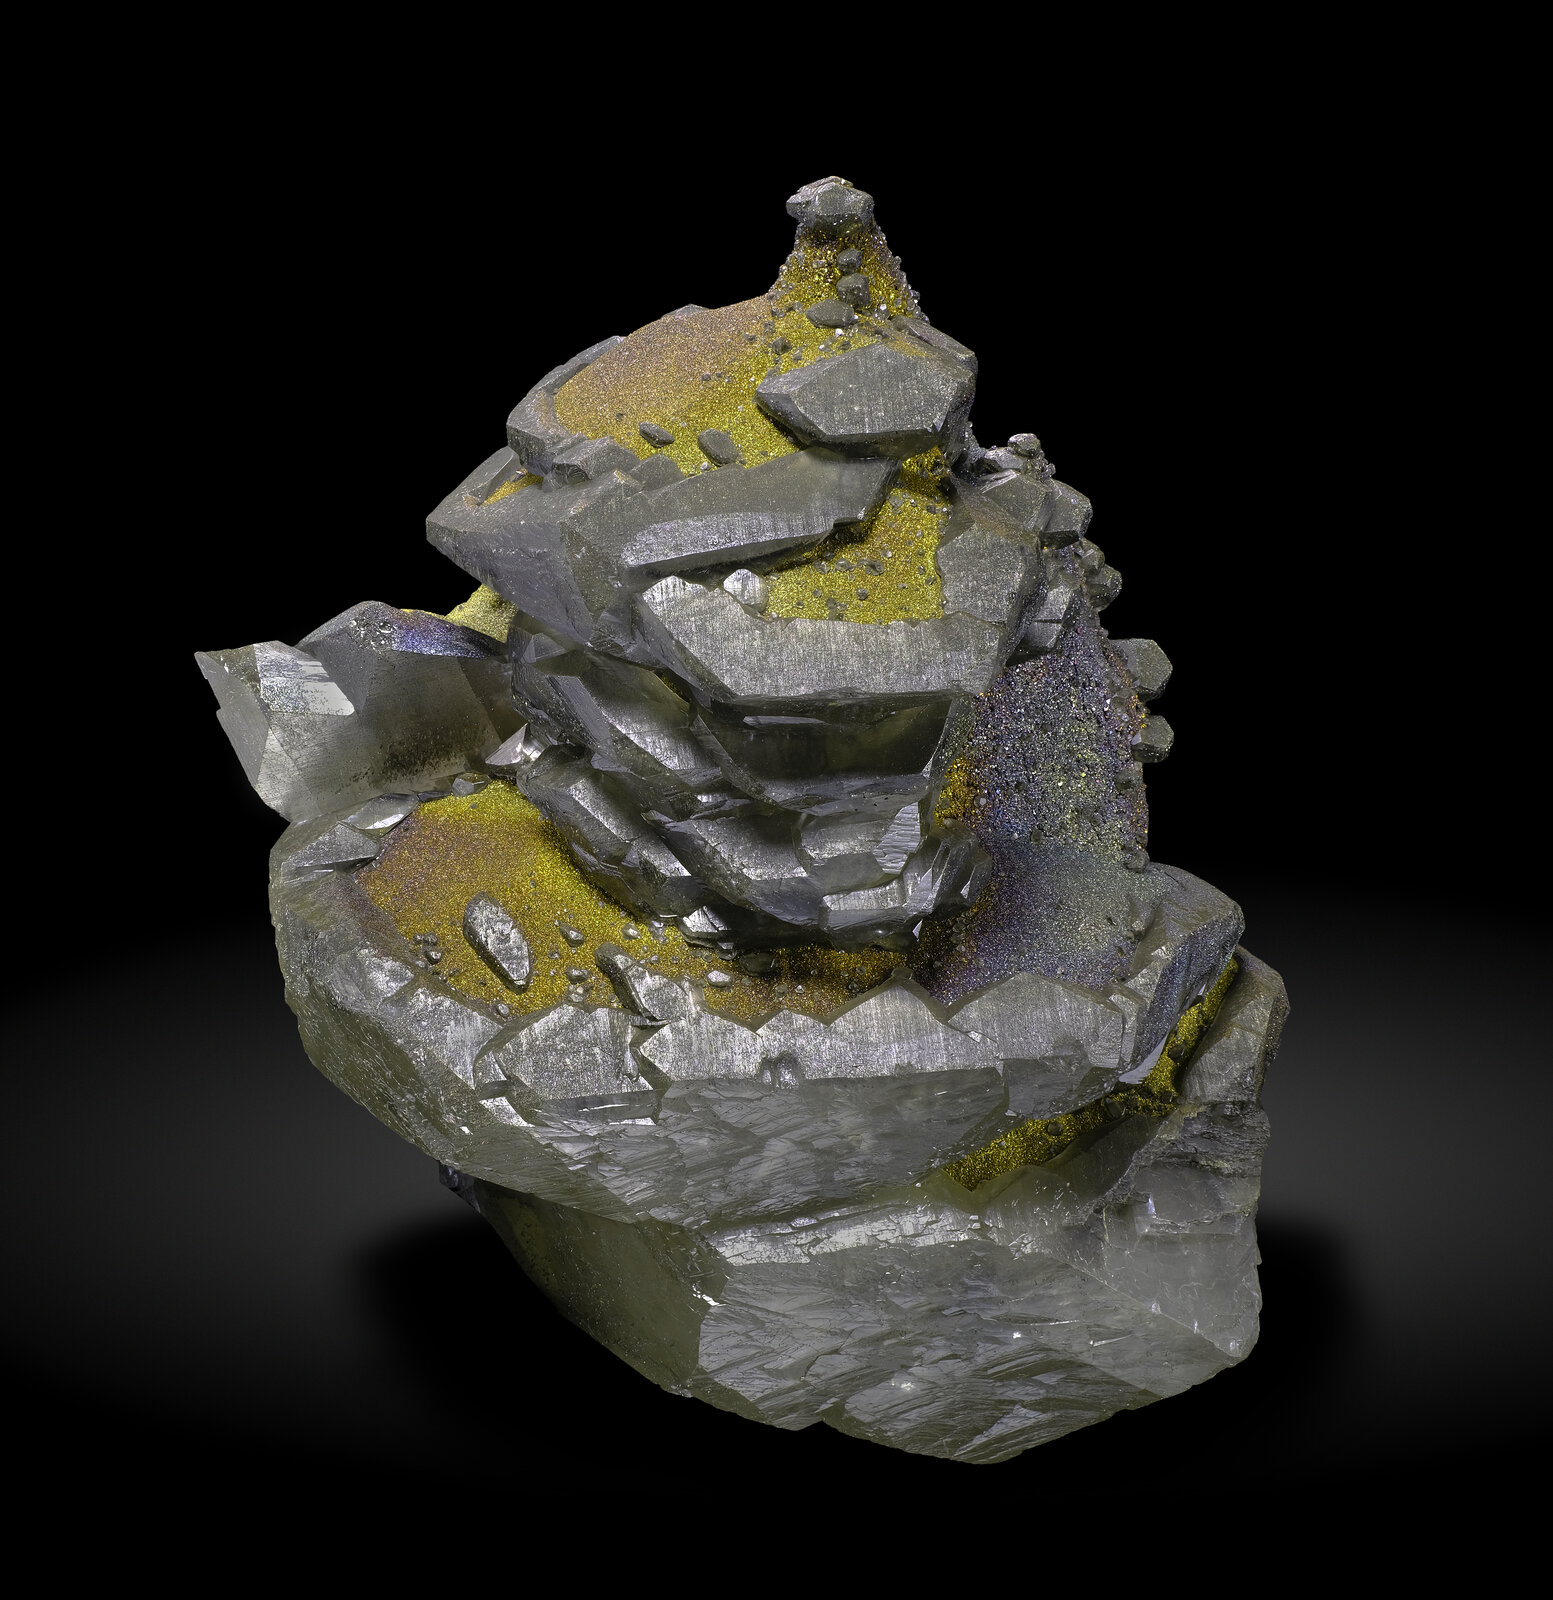 specimens/s_imagesAP1/Calcite-EFR91AP1_0366_f.jpg